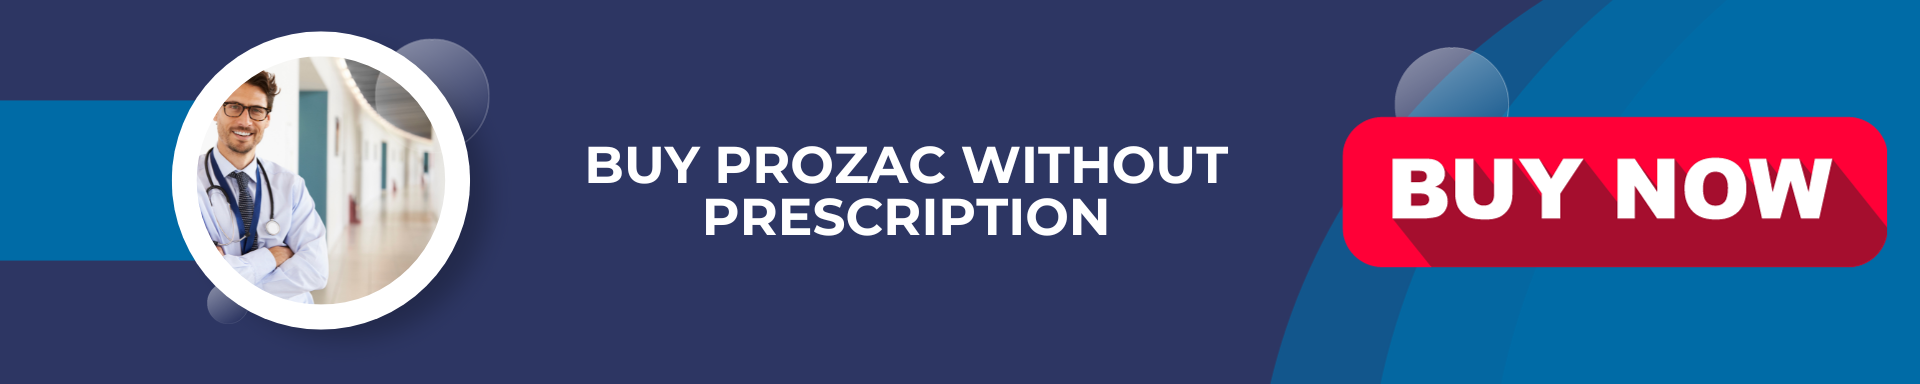 Achetez prozac canada